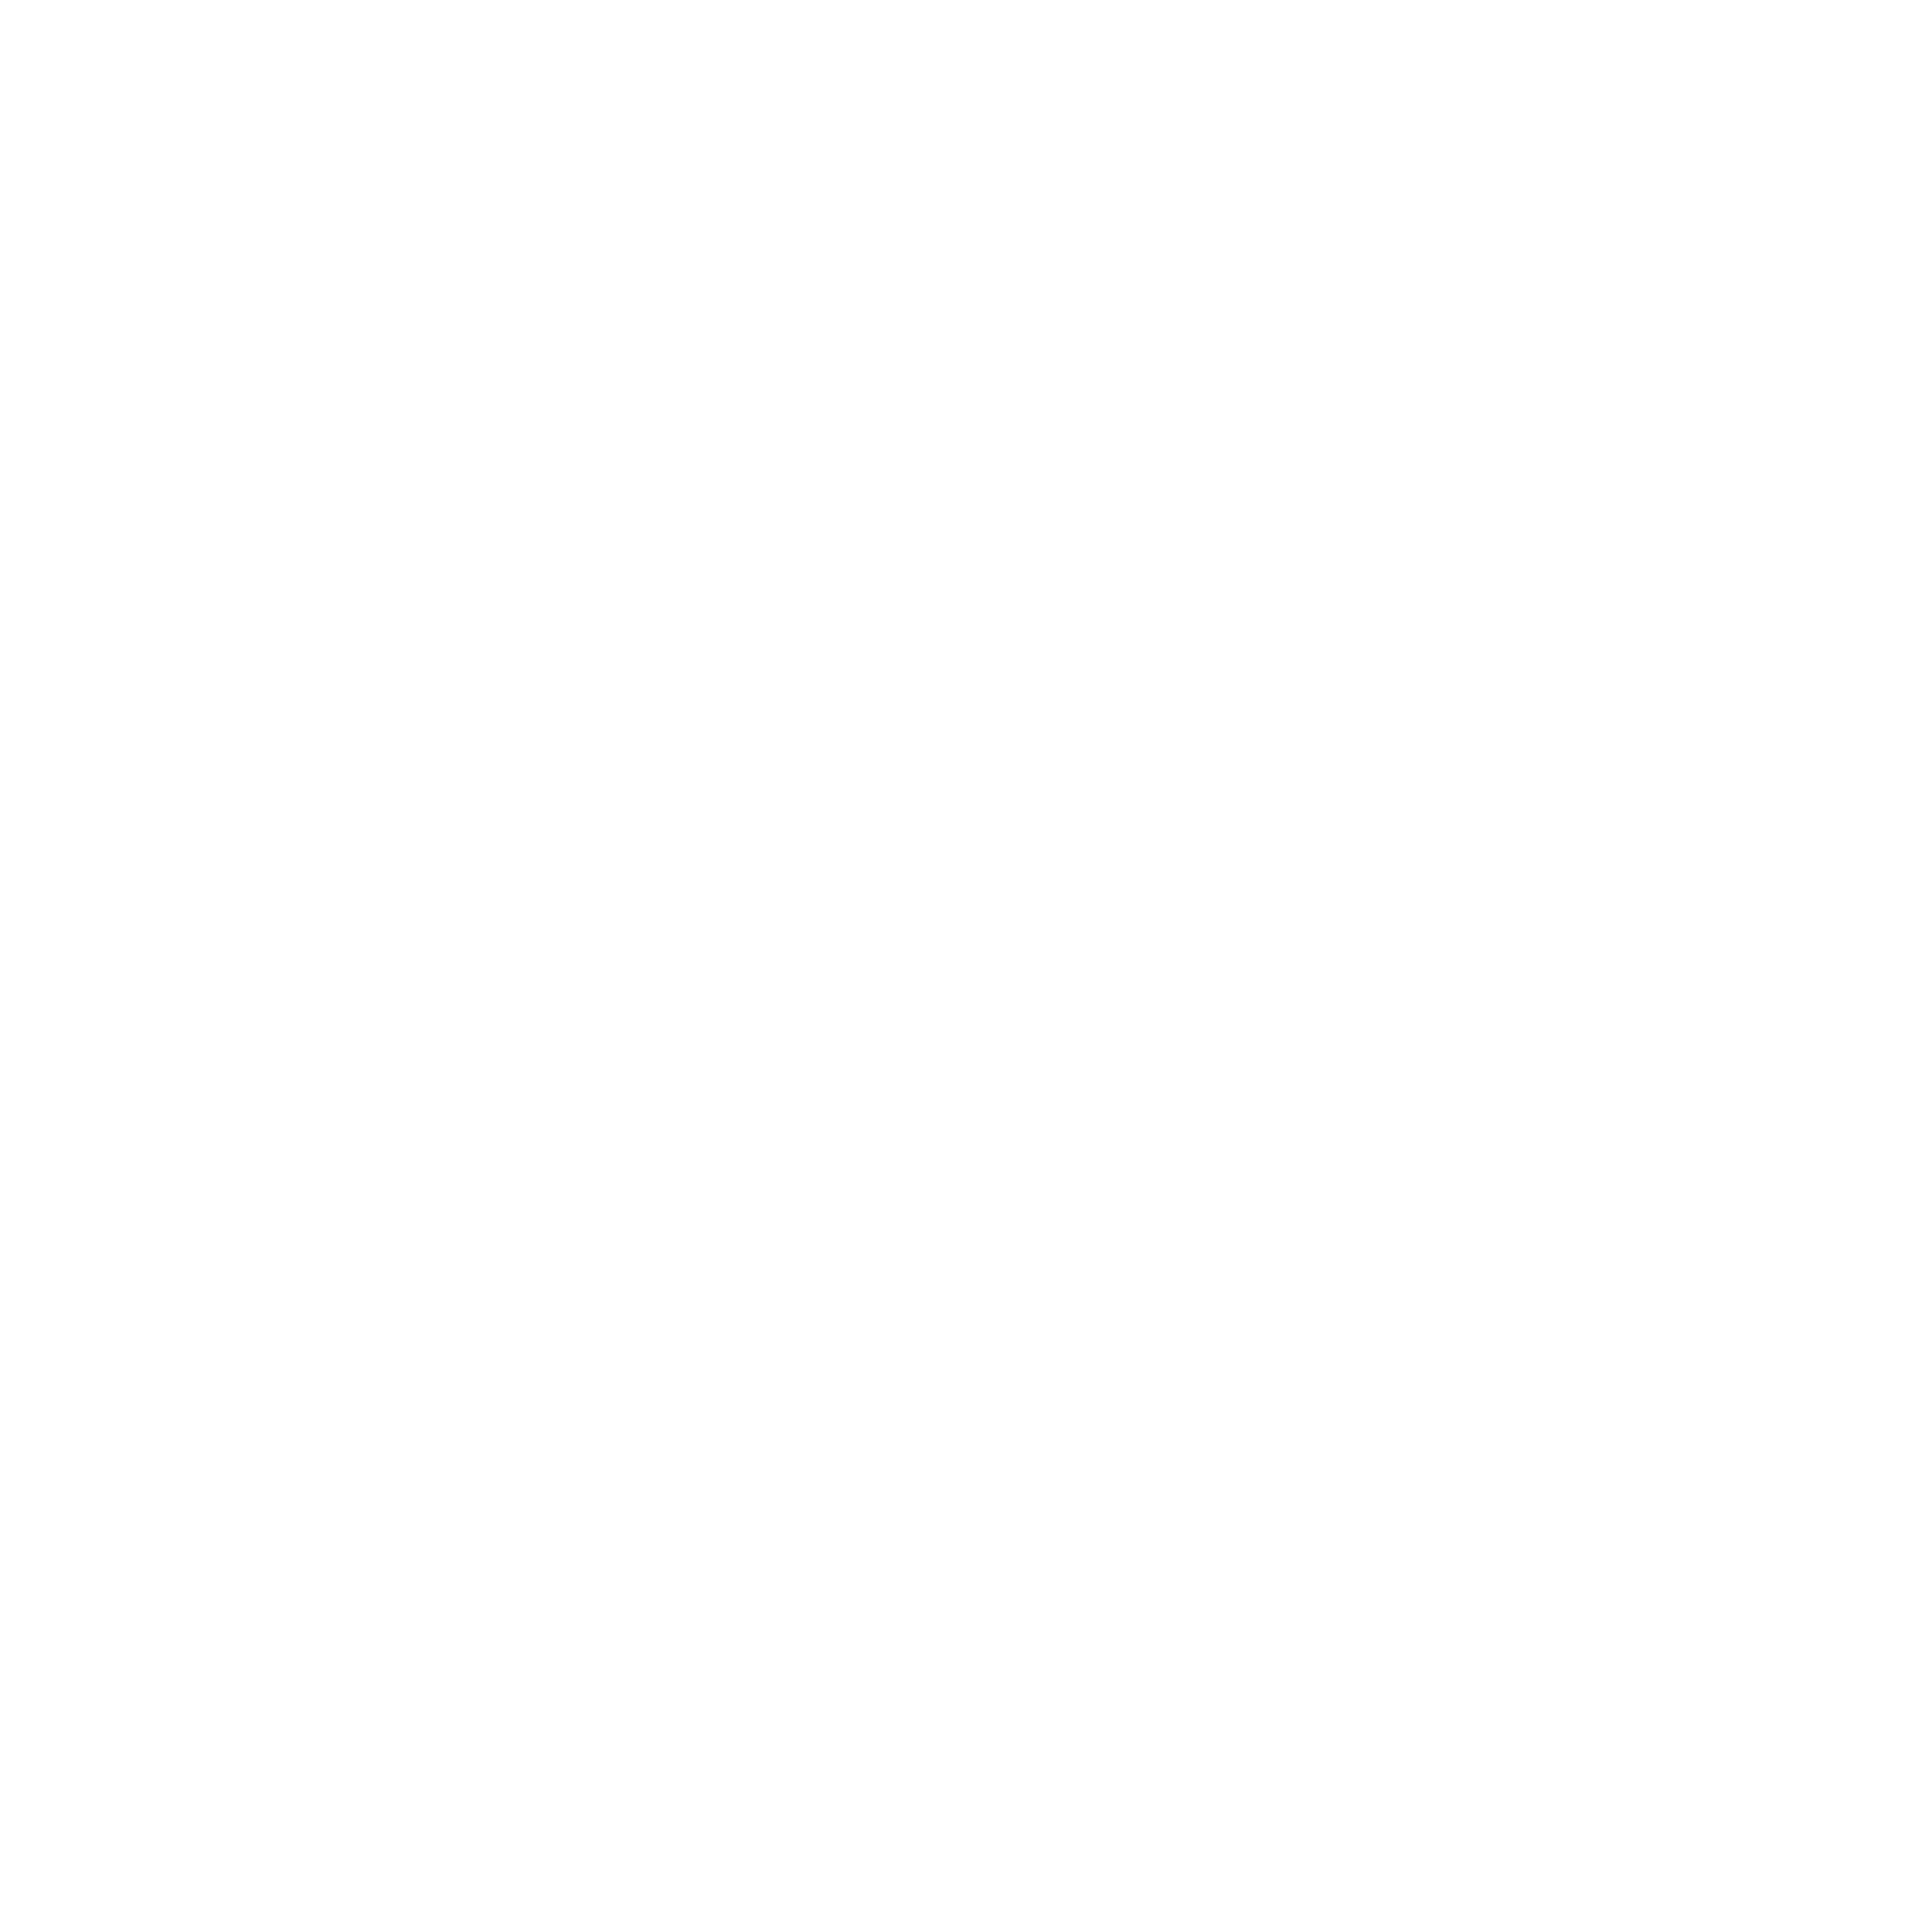 A-Good-Cut-new-logo_white-1